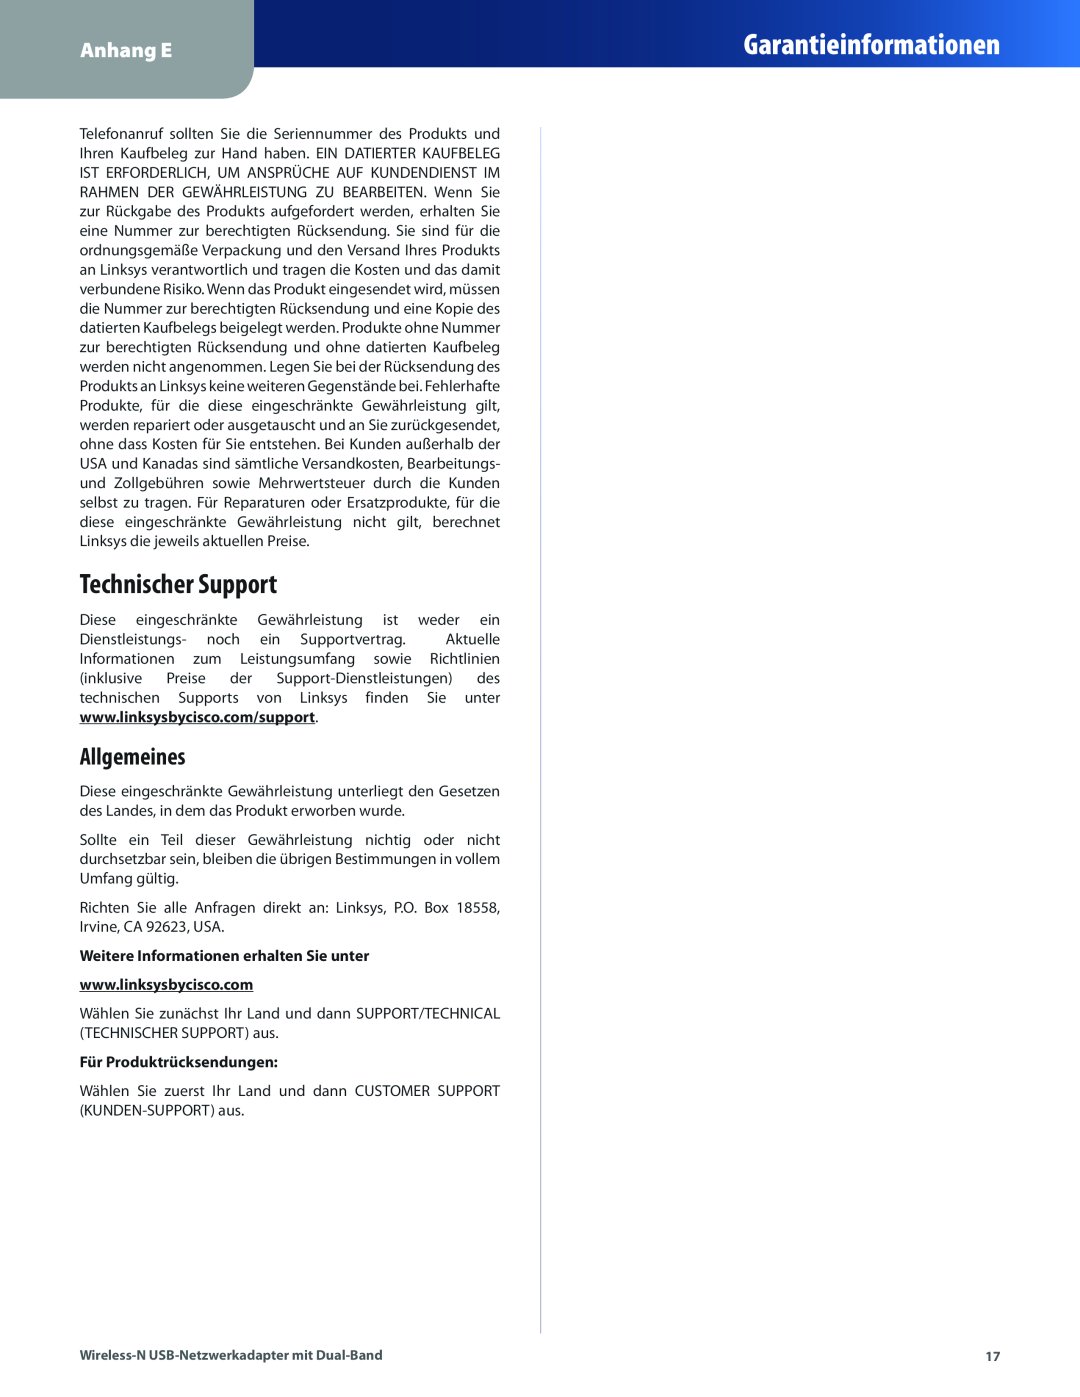 Cisco Systems WUSB600N manual Technischer Support, Allgemeines, Garantieinformationen, Anhang E, Für Produktrücksendungen 